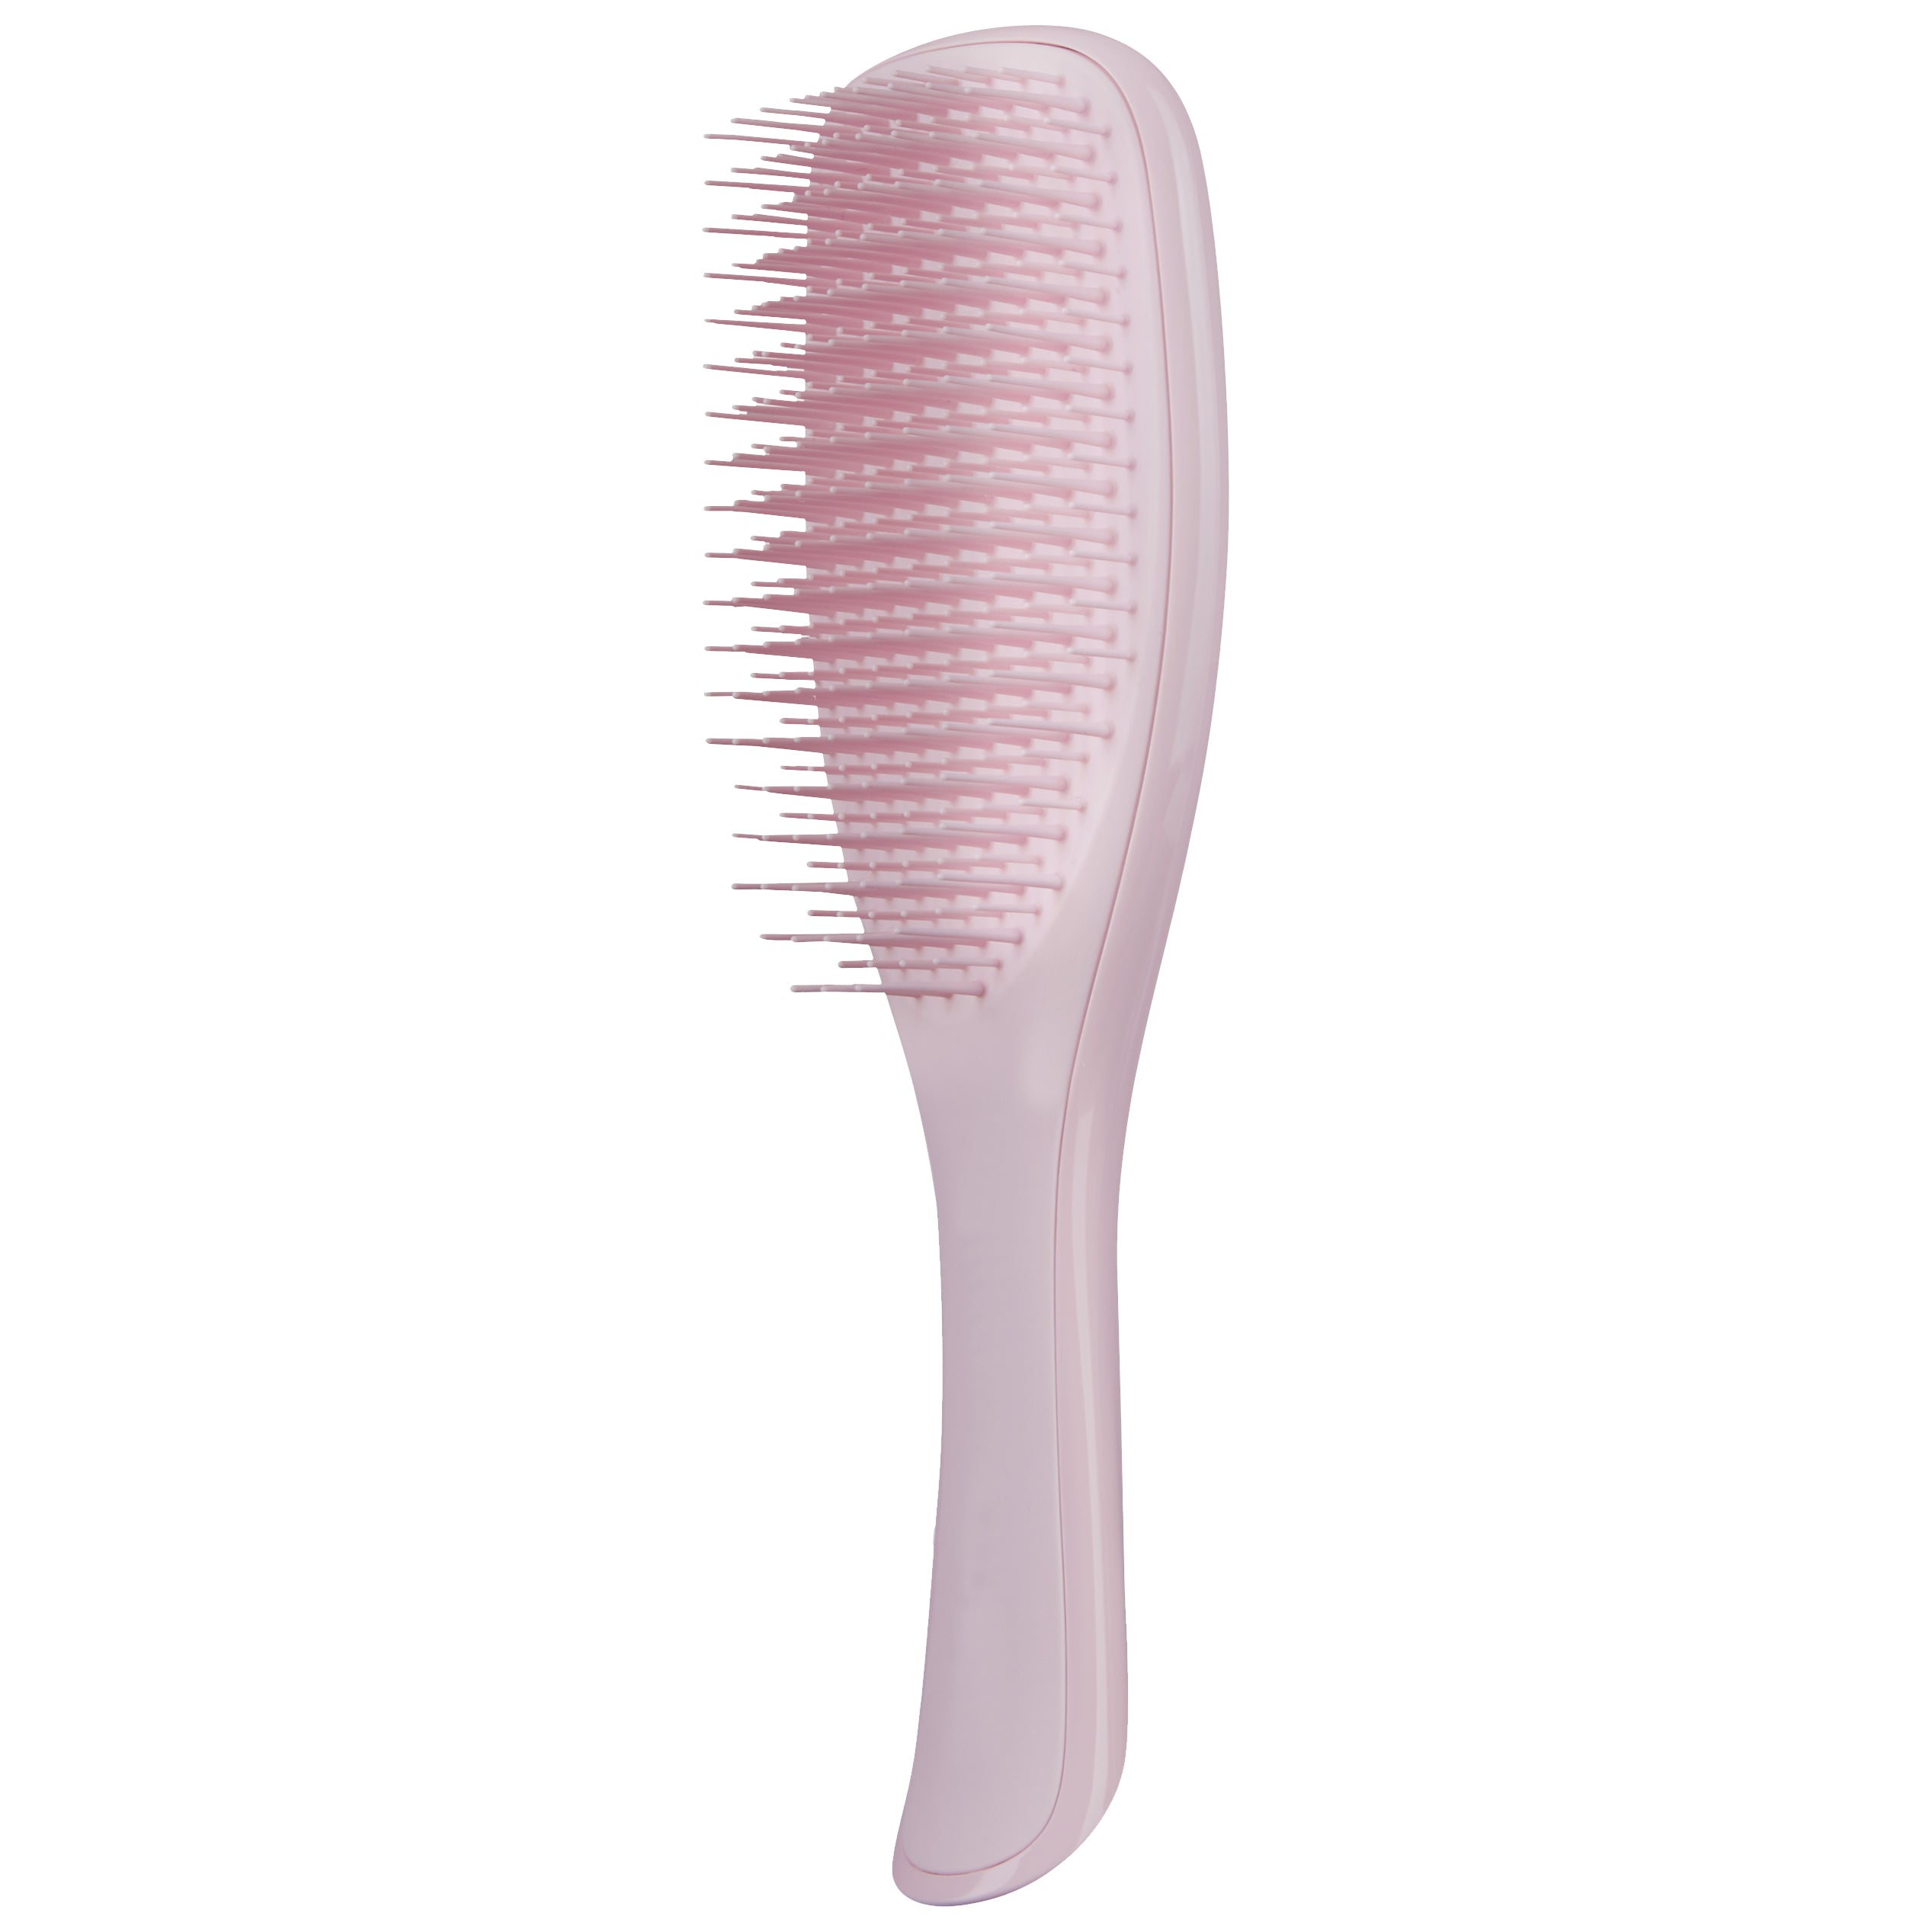 The Wet Detangler Hairbrush - Millennial Pink